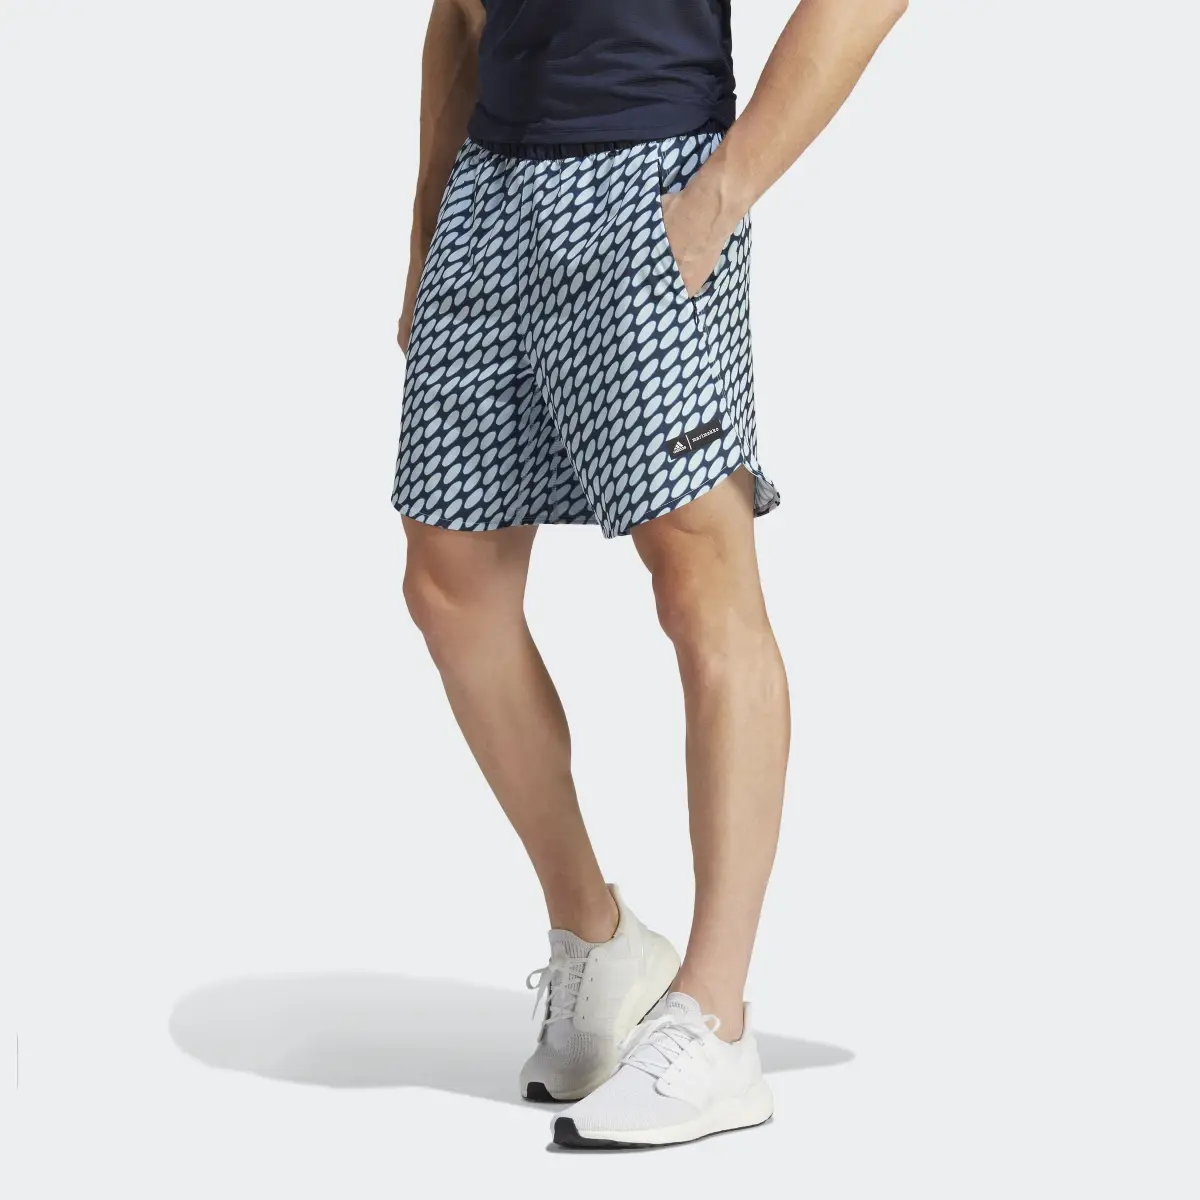 Adidas x Marimekko Designed for Training Shorts. 1